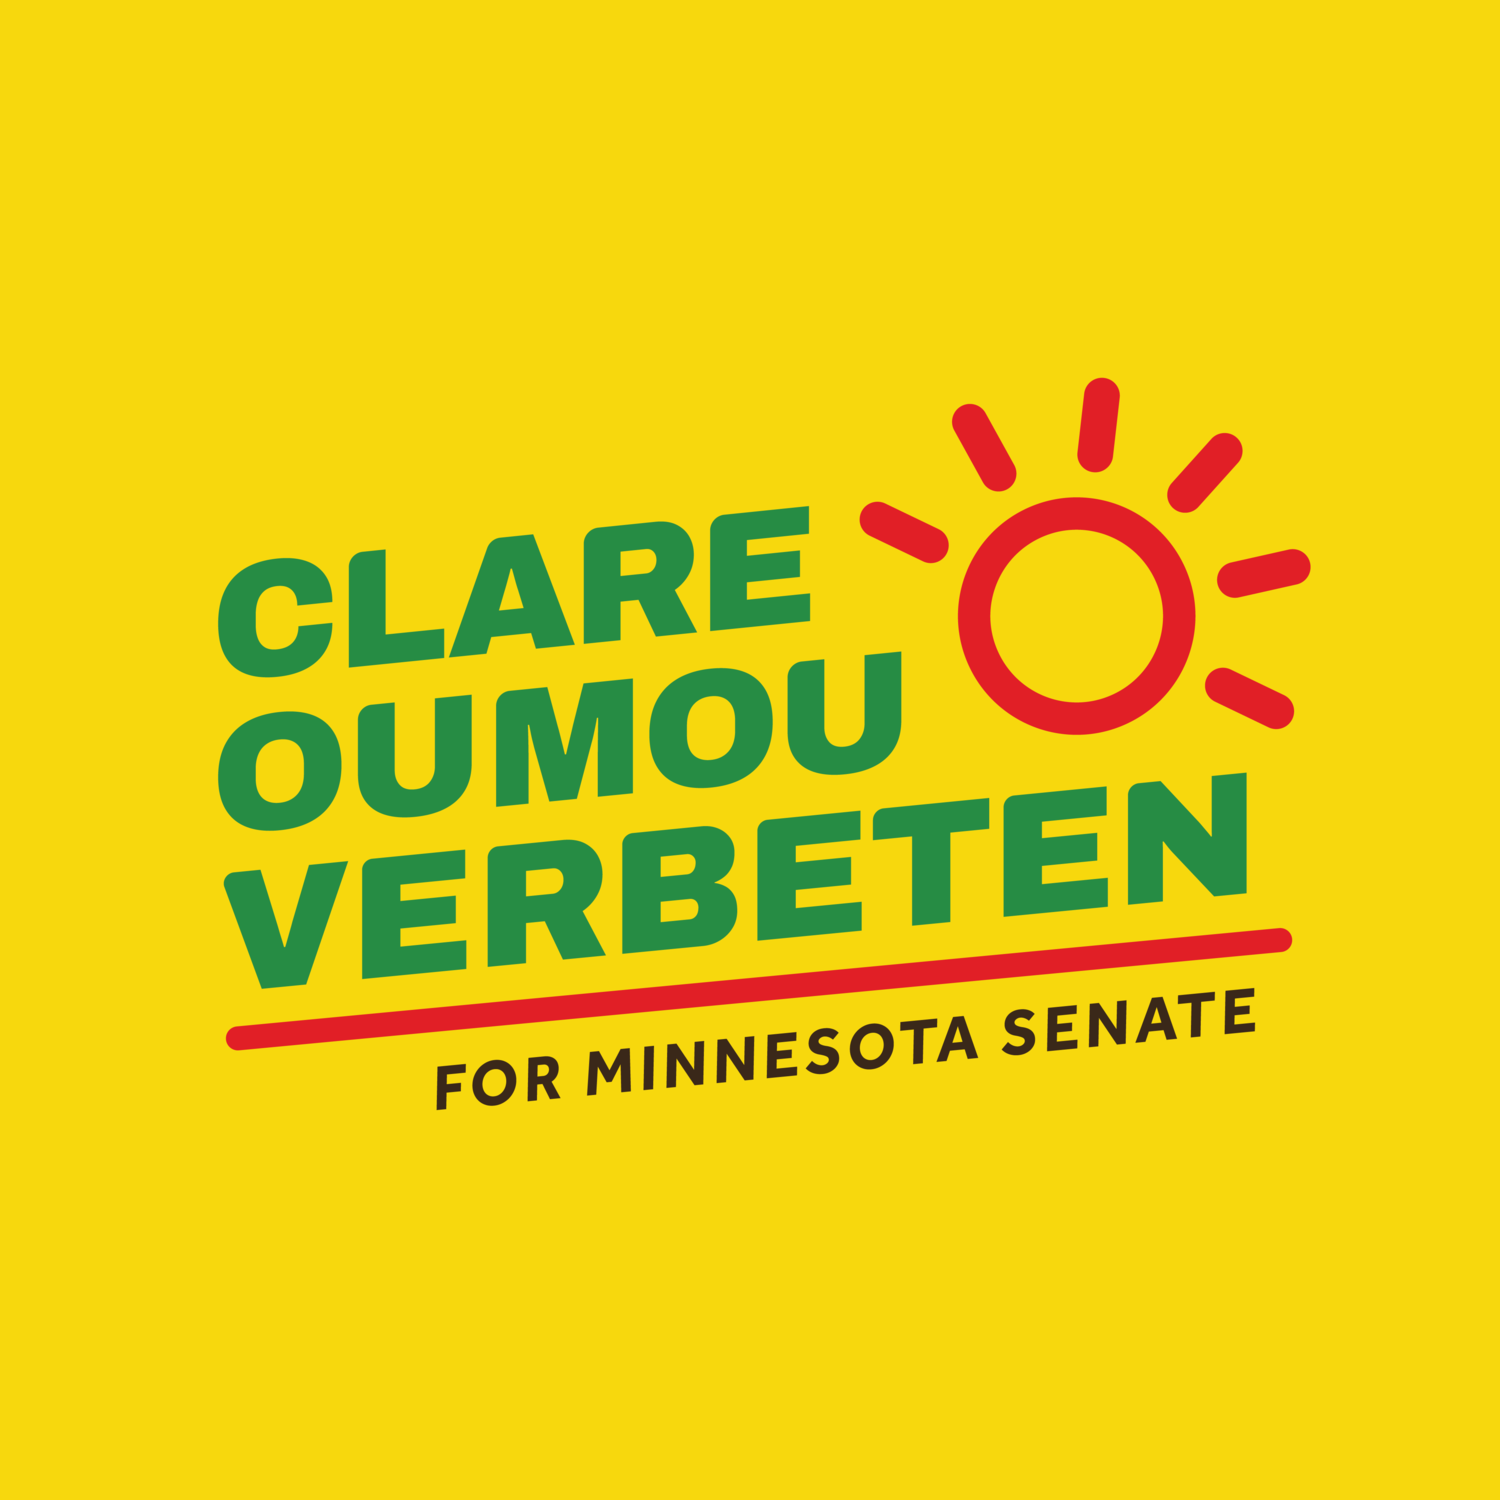 Clare Oumou Verbeten